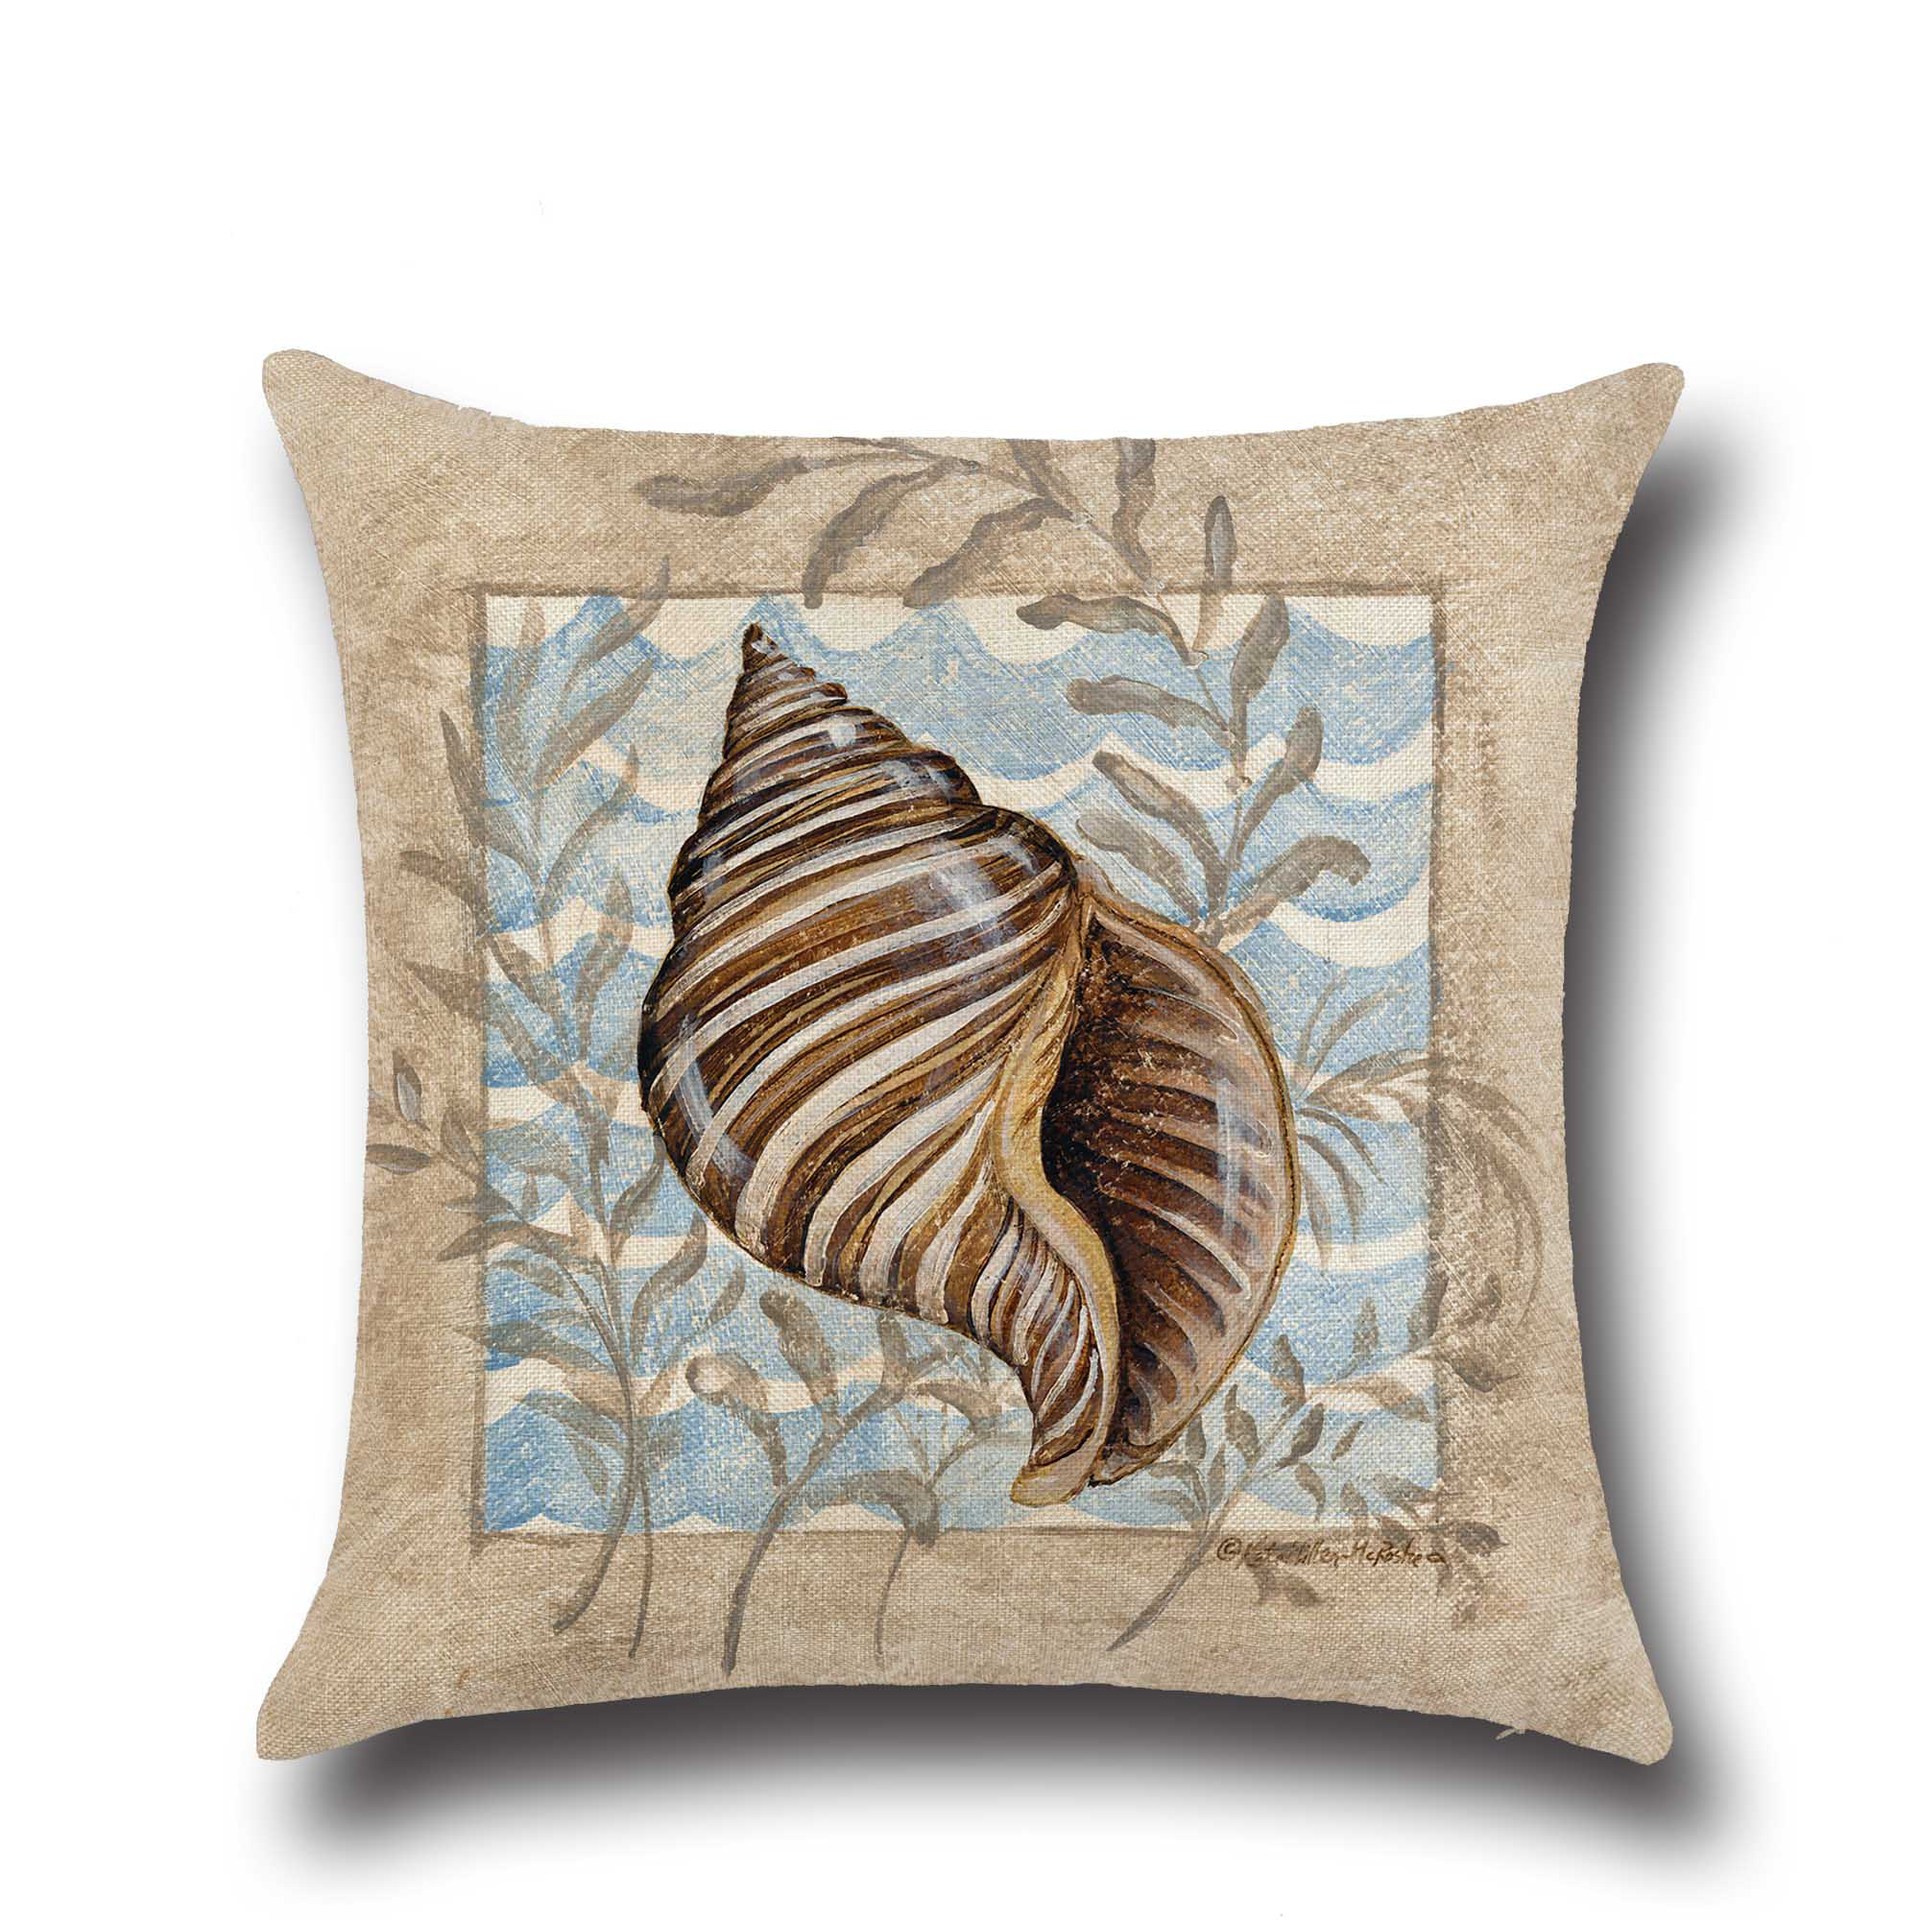 

Conch Seahorse Seashell Cushion Cover 45*45cm Cotton Linen Wedding Decor Throw Pillow Case